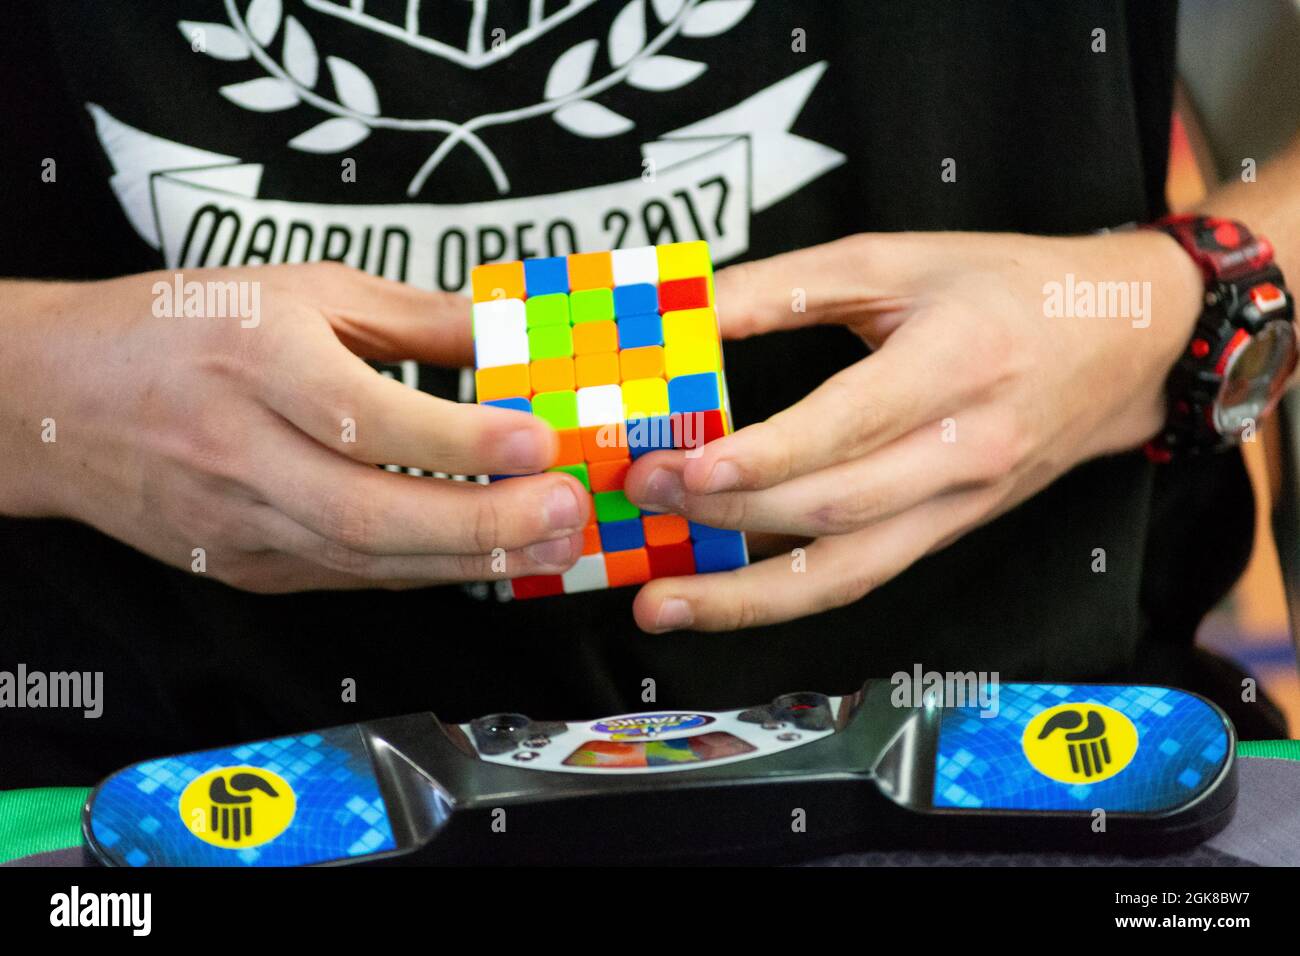 Nahaufnahme der Hände, die einen Rubik's Cube lösen. Farbpuzzle. Stockfoto